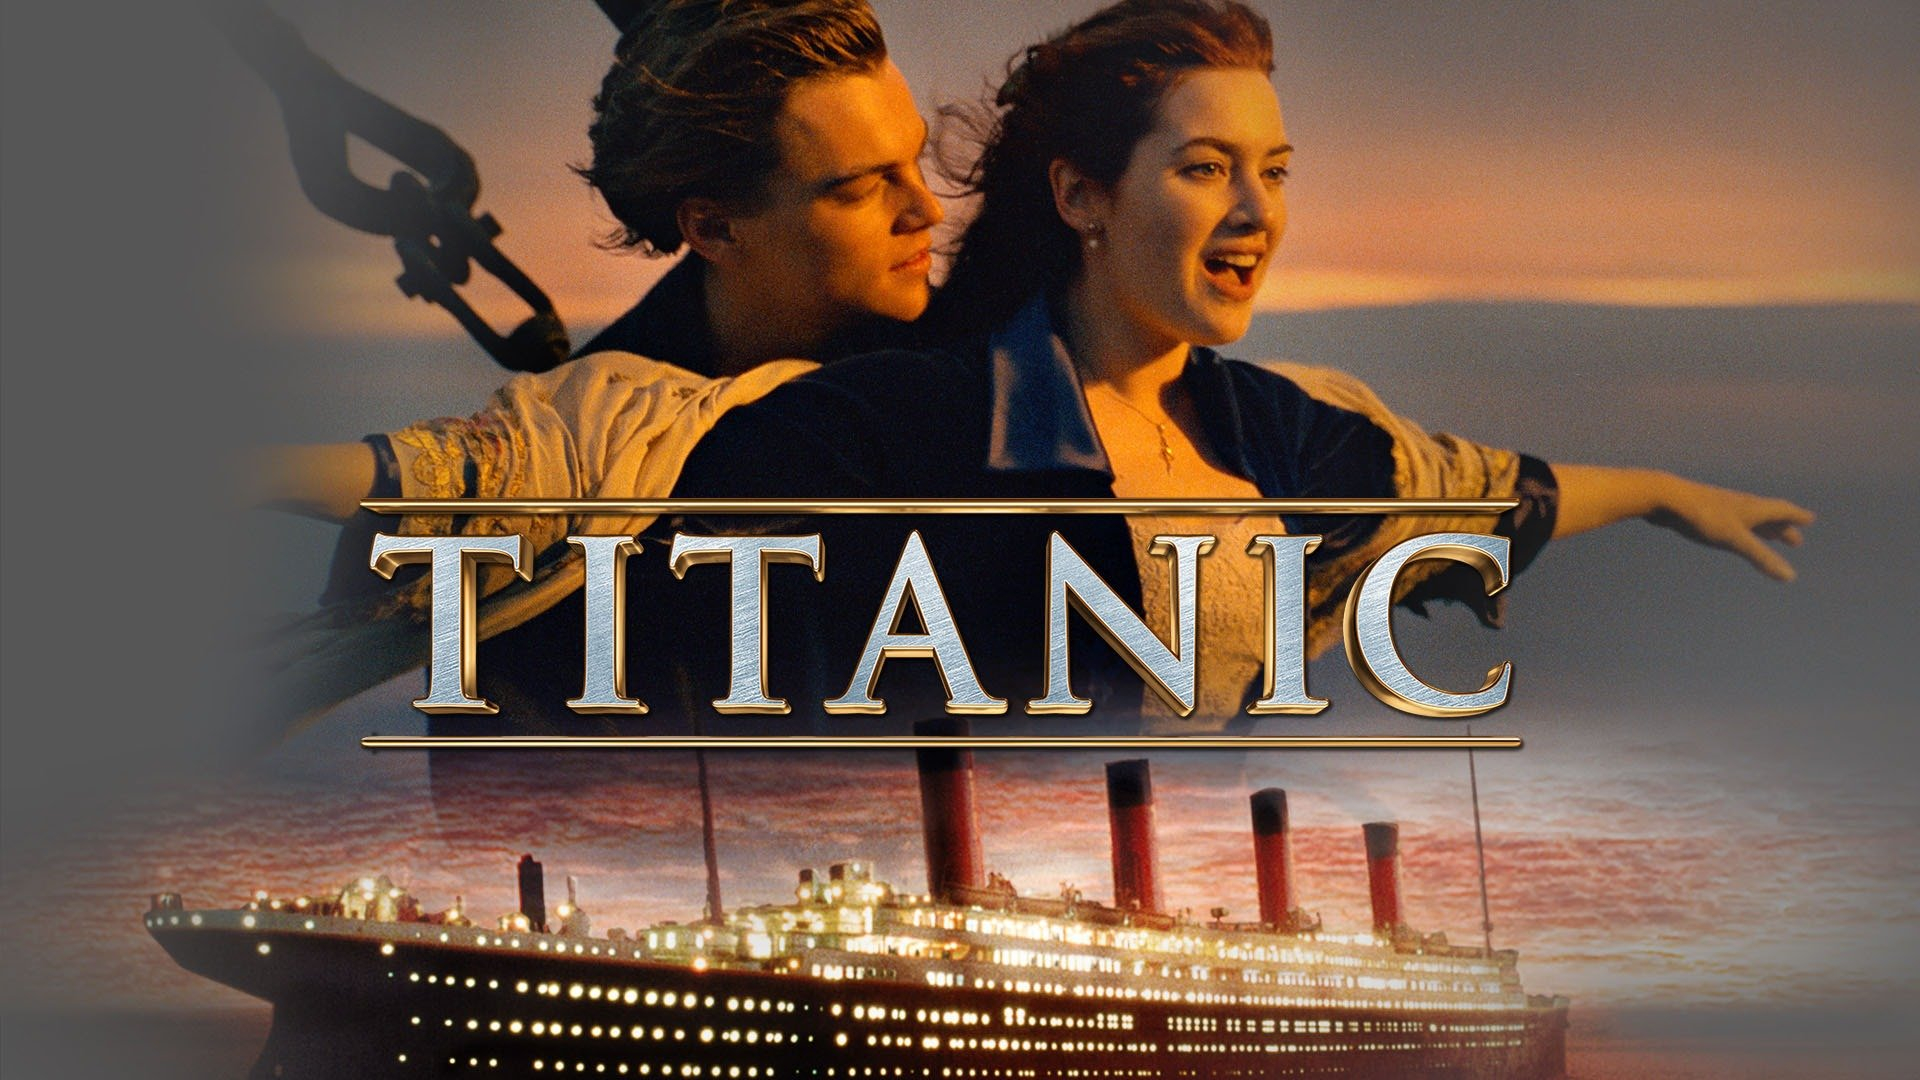 Bộ phim Titanic năm 2017 vẫn được xem là một hiện tượng văn hóa đại chúng cho đến ngày nay